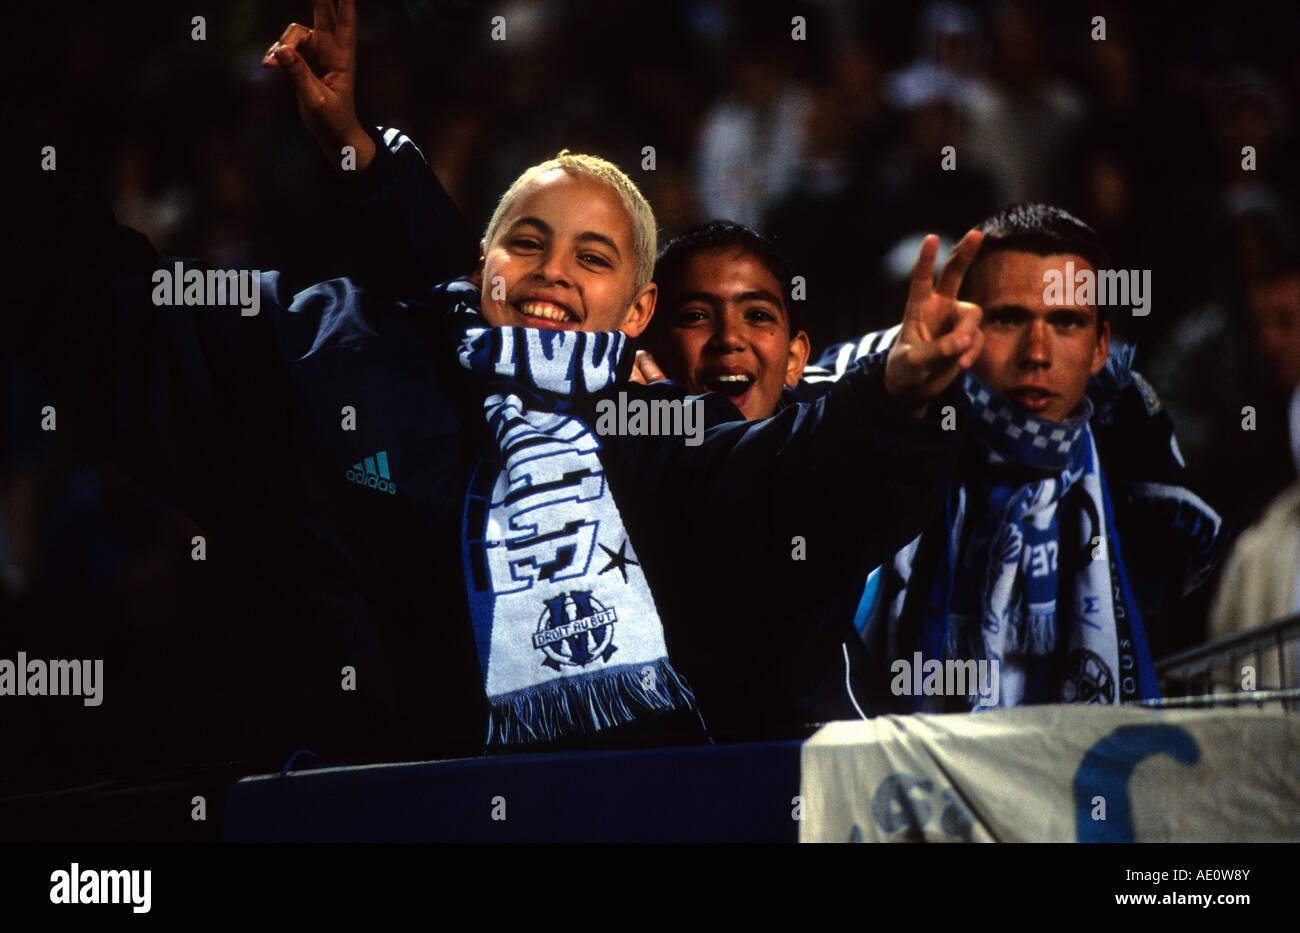 Olypique Marseille Fußball-Fans feiern ein Ziel während eines Spiels im Stade Velodrome, Marseille, Frankreich. Stockfoto